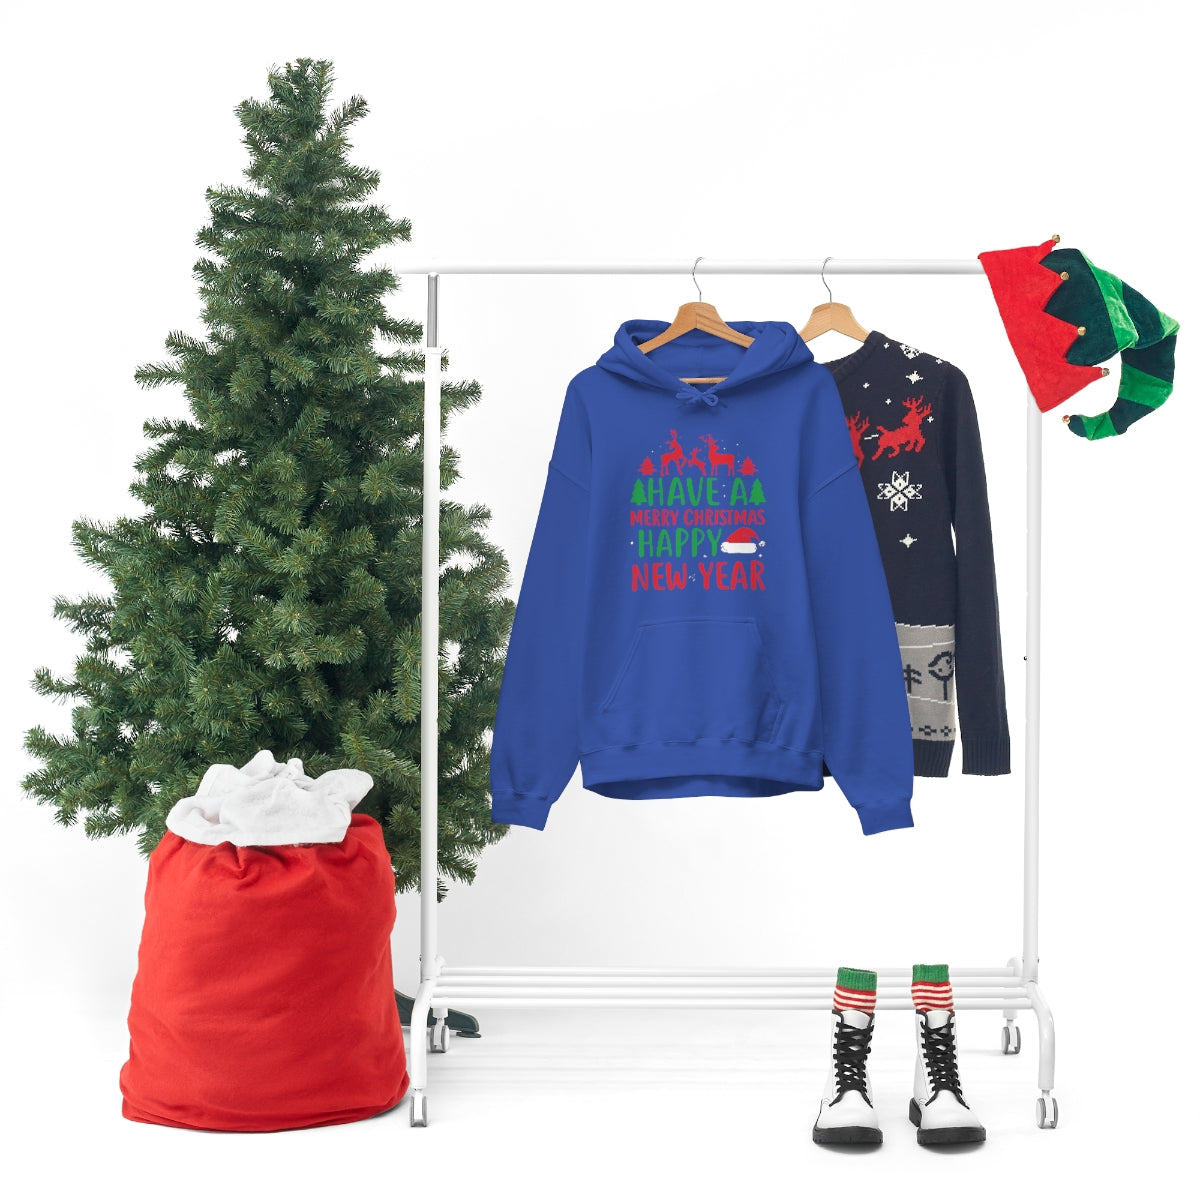 Merry Christmas Hoodie Unisex Custom Hoodie , Hooded Sweatshirt , HAVE A MERRY CHRISTMAS HAPPY NEW YEAR Printify